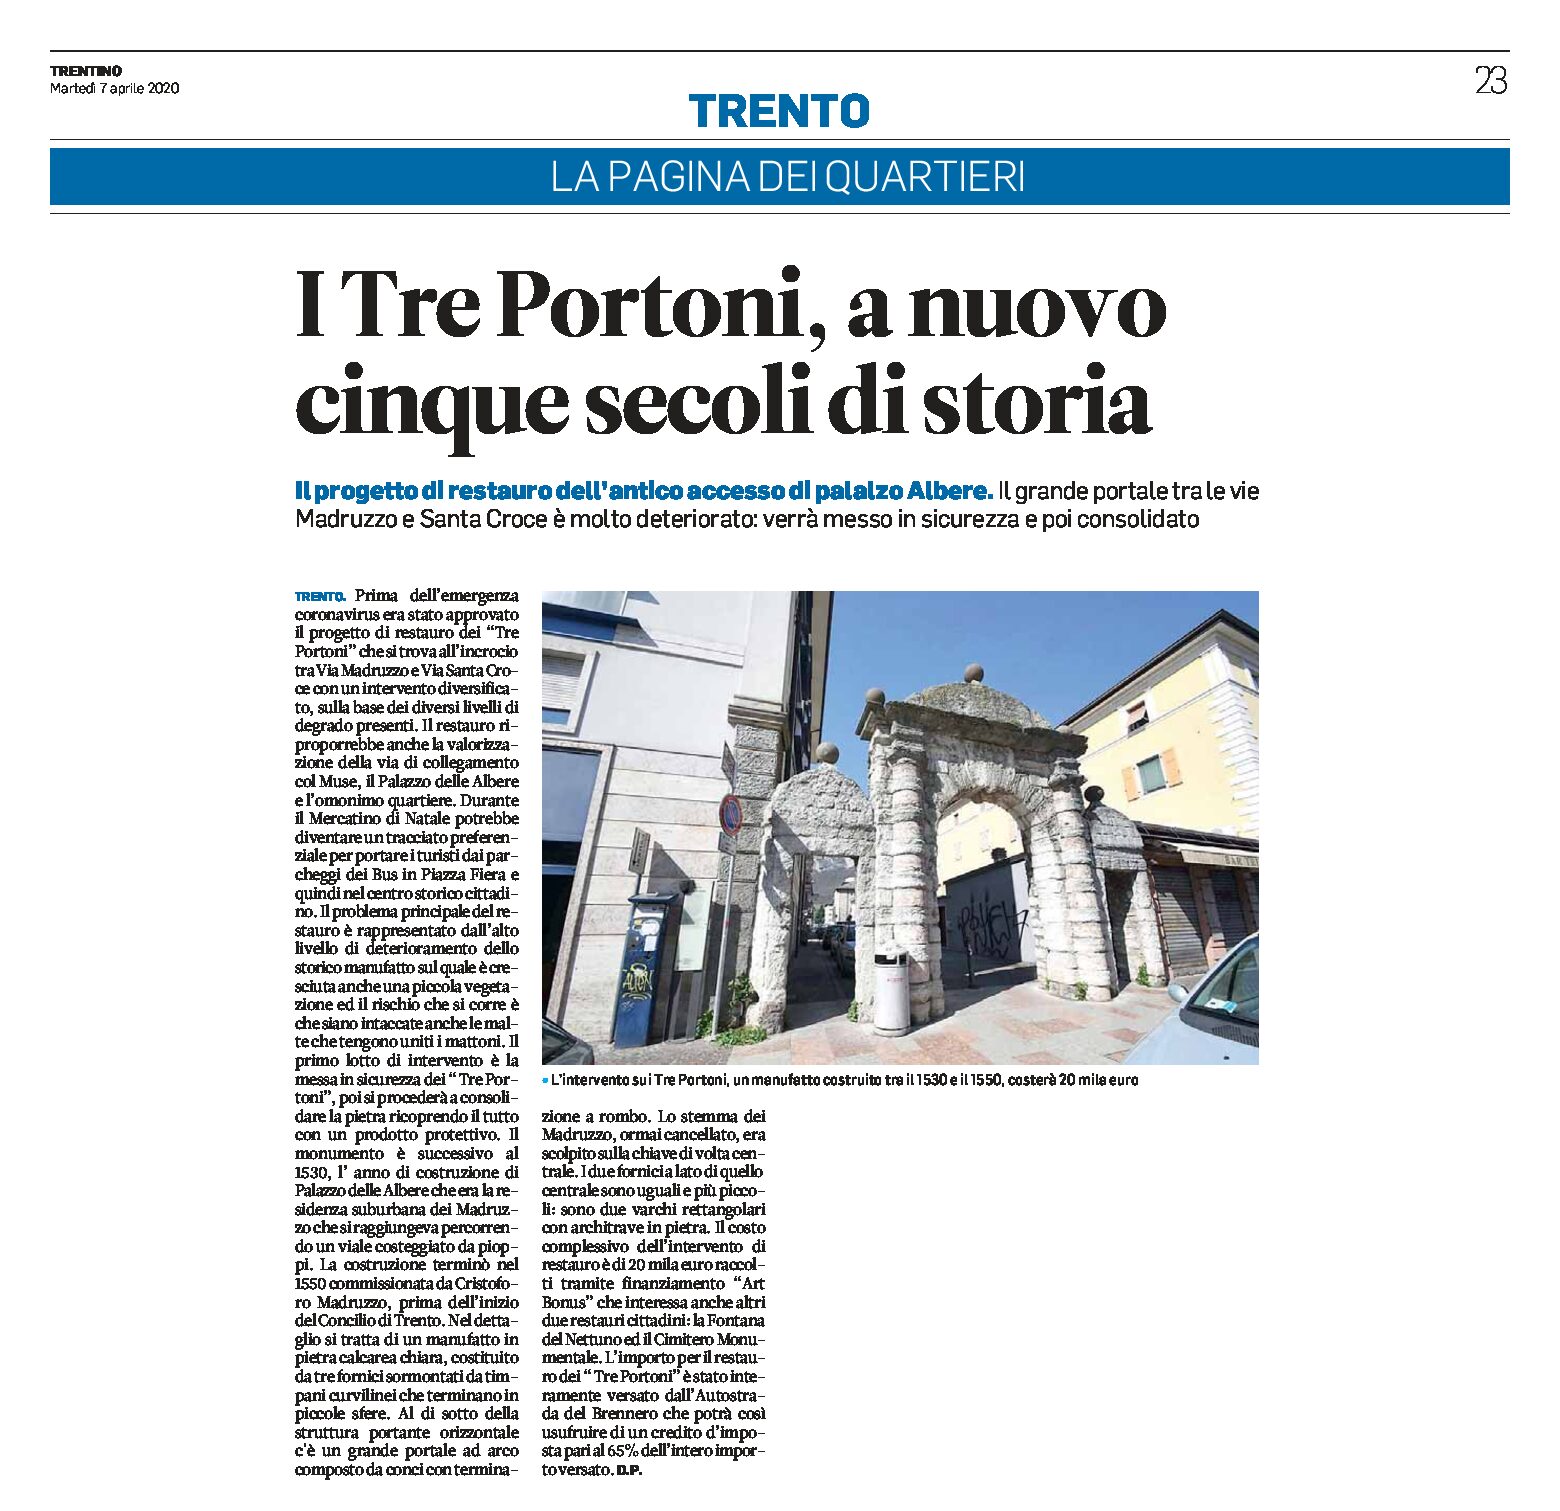 Trento, Tre Portoni: a nuovo cinque secoli di storia. Il grande portale verrà restaurato